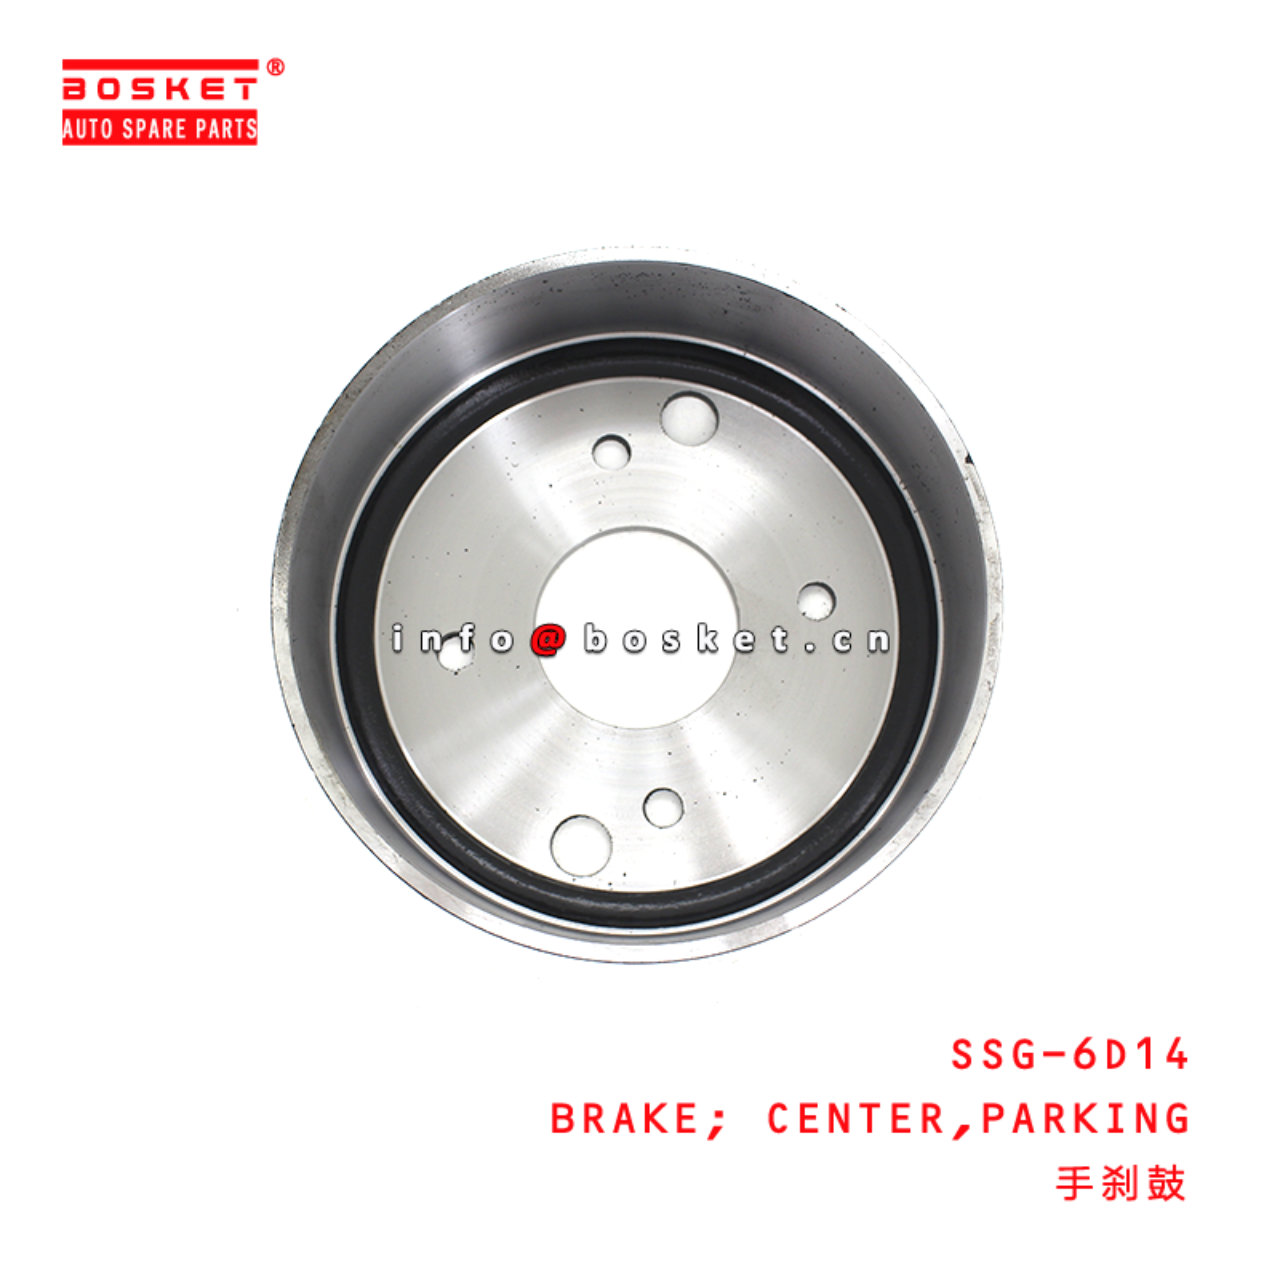 SSG-6D14 Parking Center Brake suitable for ISUZU 6D14 SSG-6D14